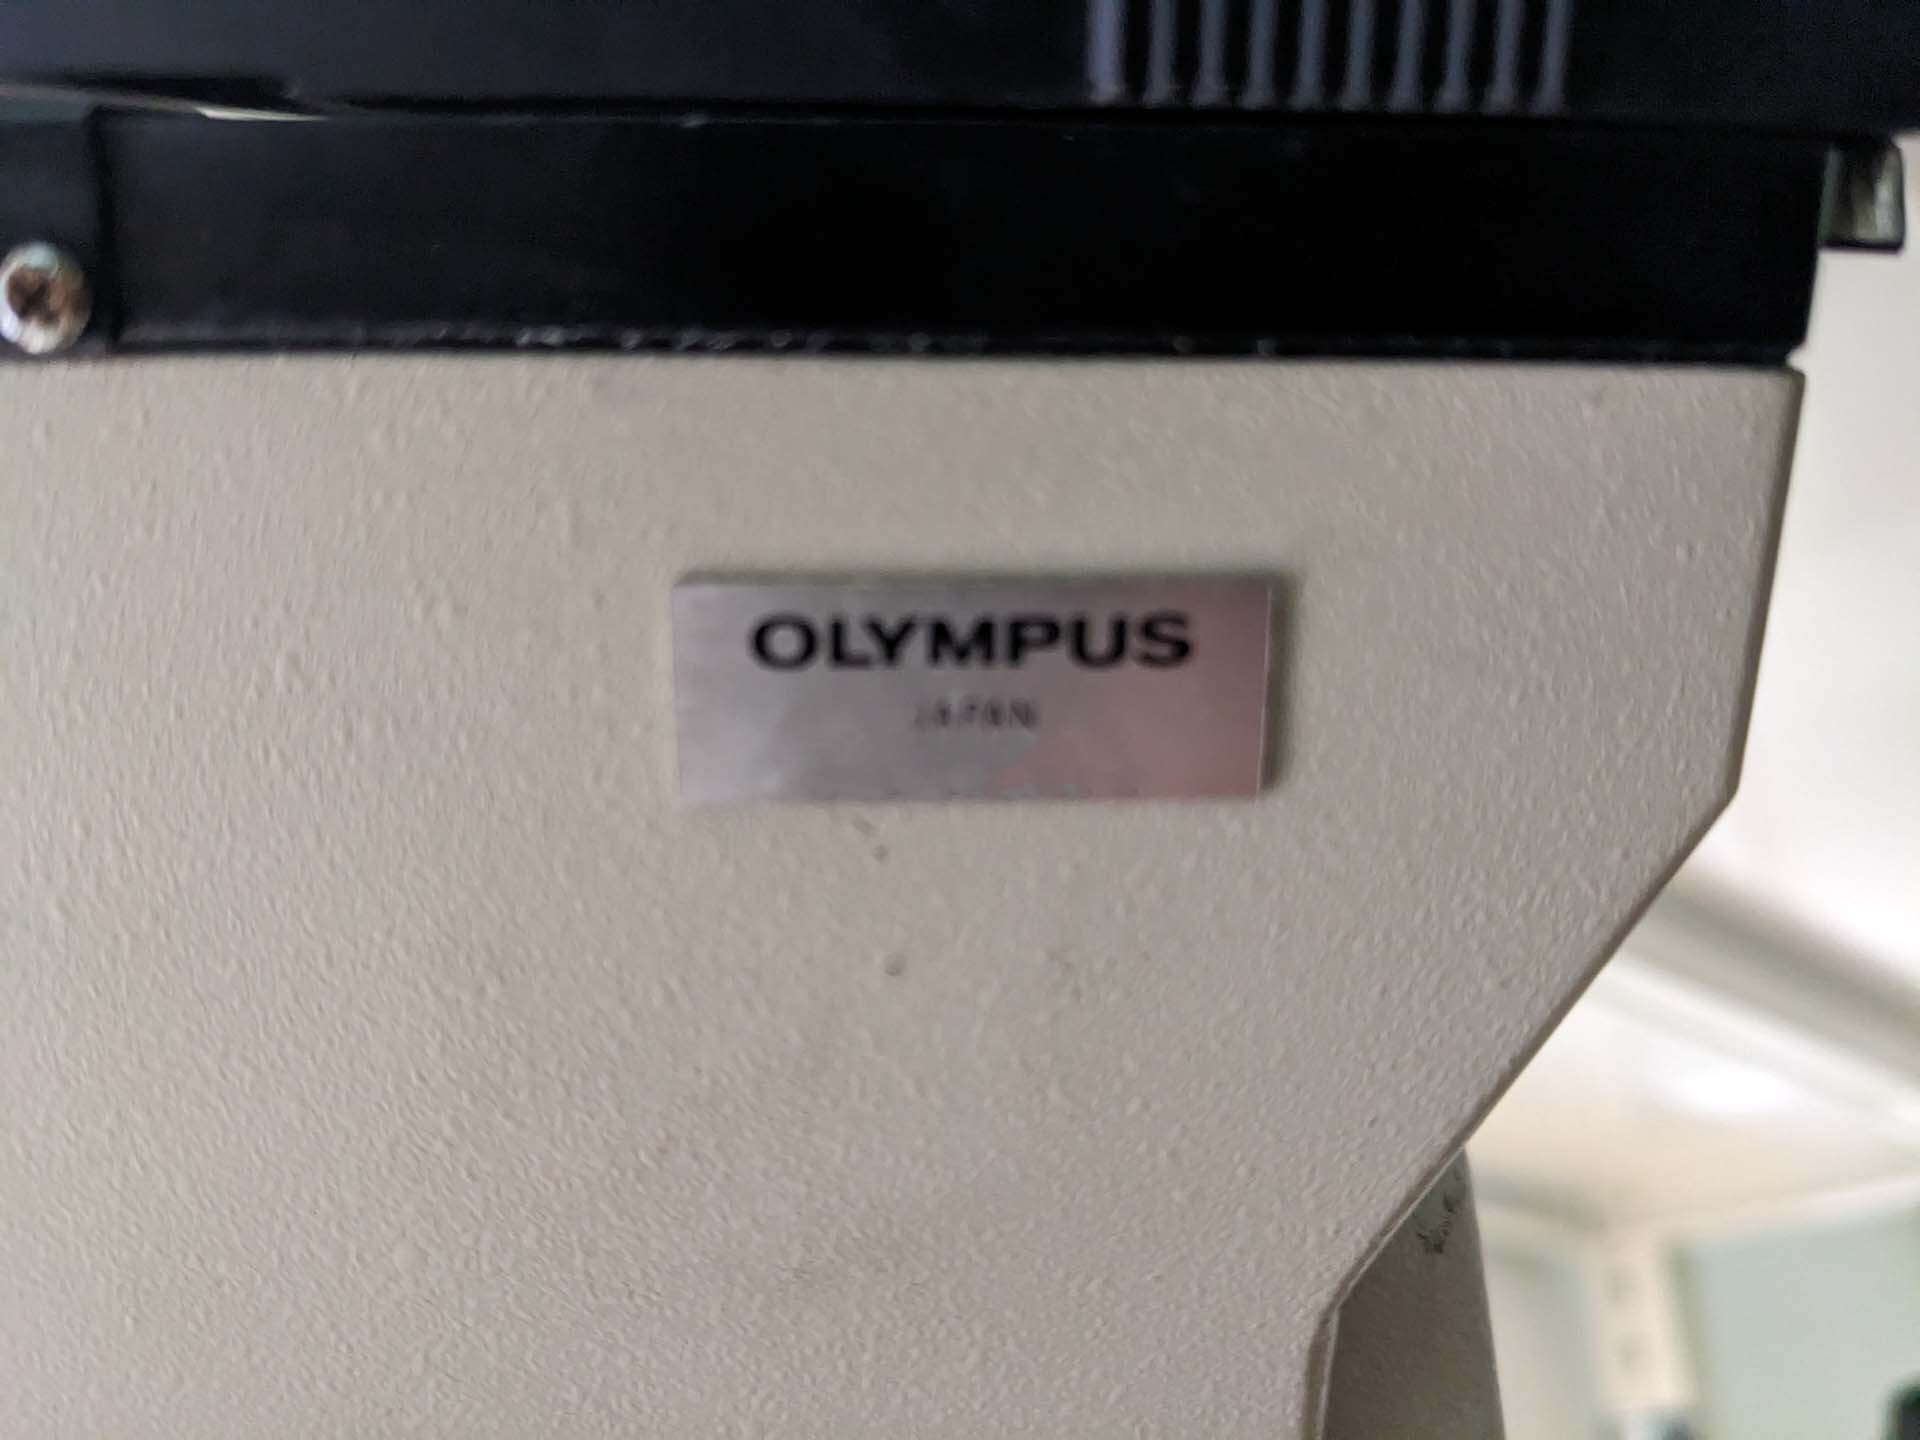 사진 사용됨 OLYMPUS BH2-UMA 판매용